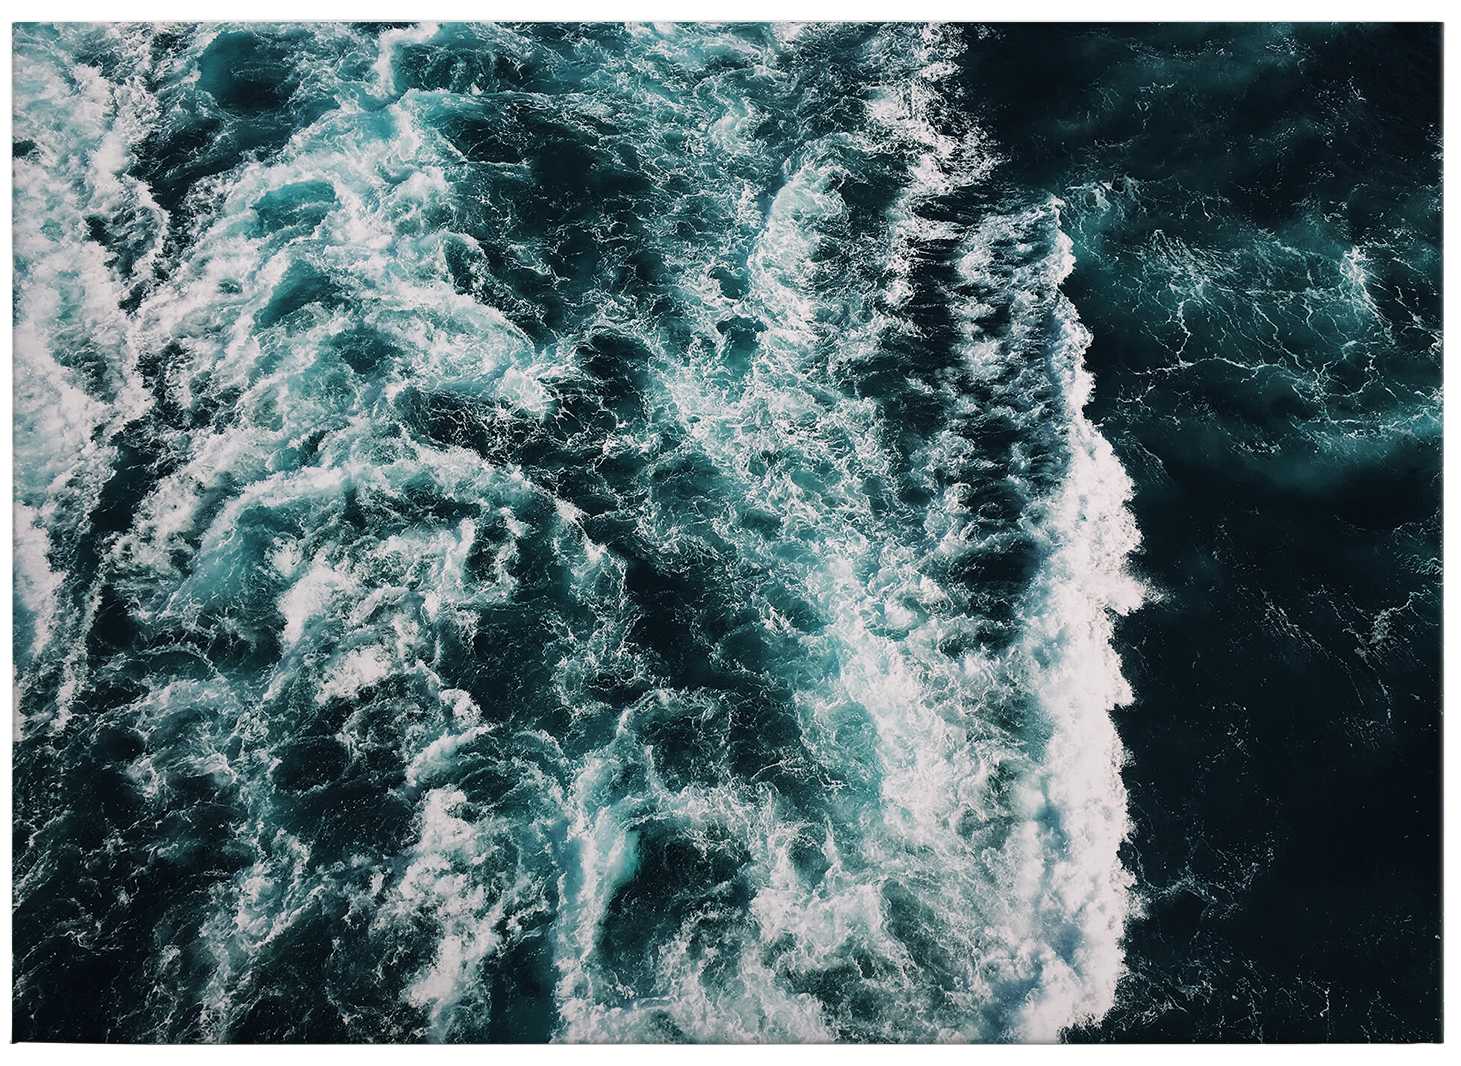             Lienzo marino con motivo de olas - 0,70 m x 0,50 m
        